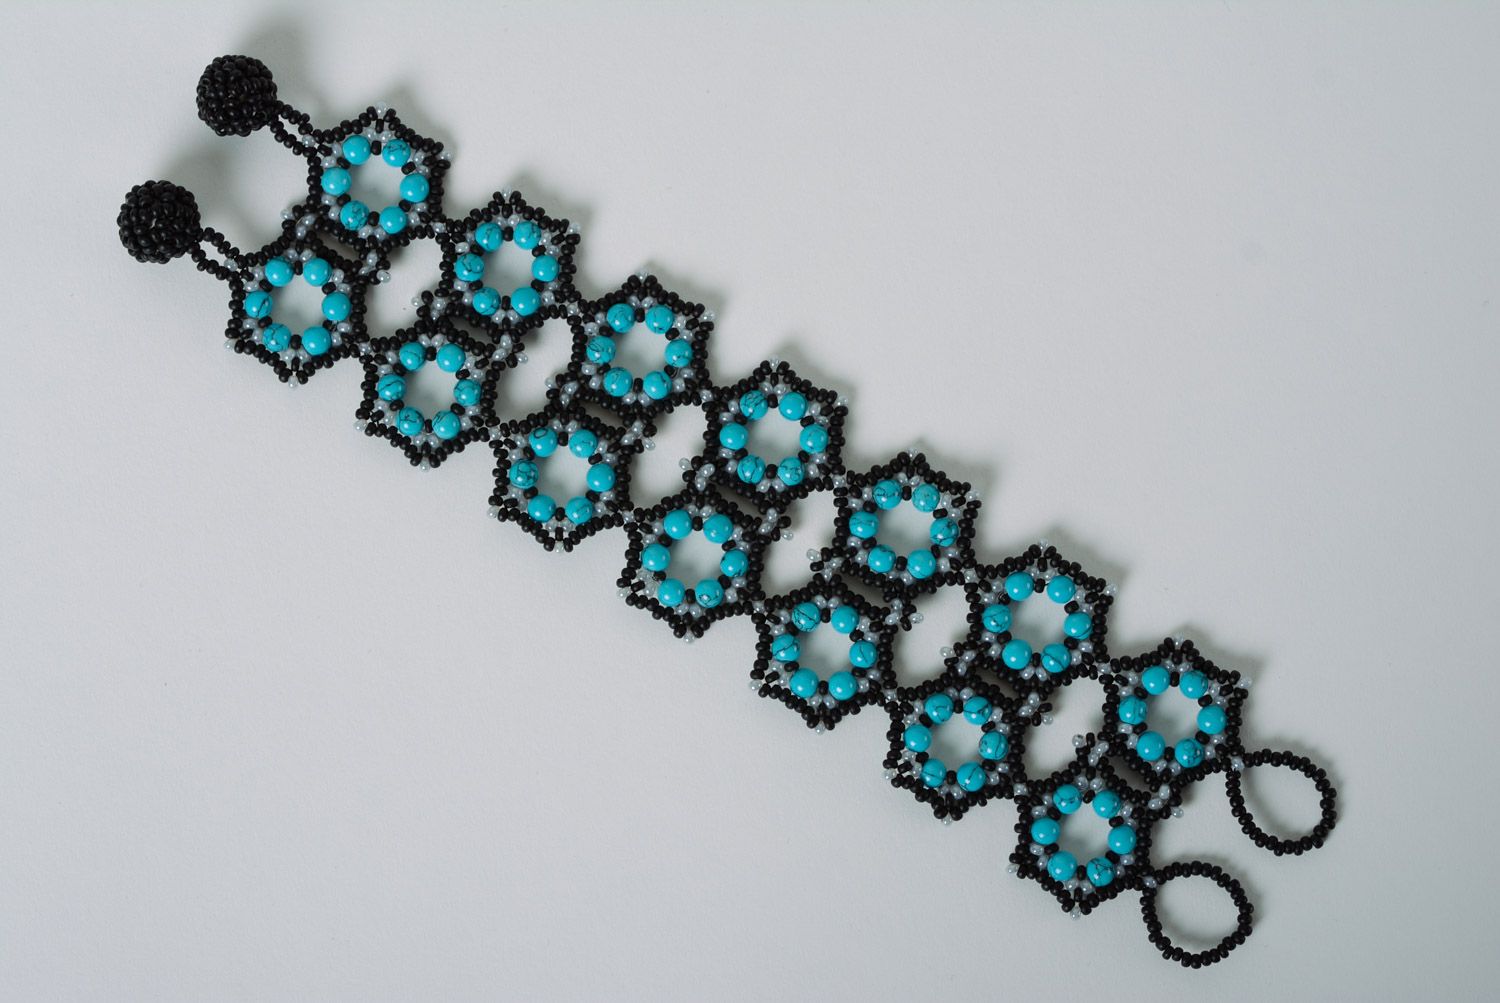 Black and blue handmade designer wrist bracelet woven of beads for women photo 5